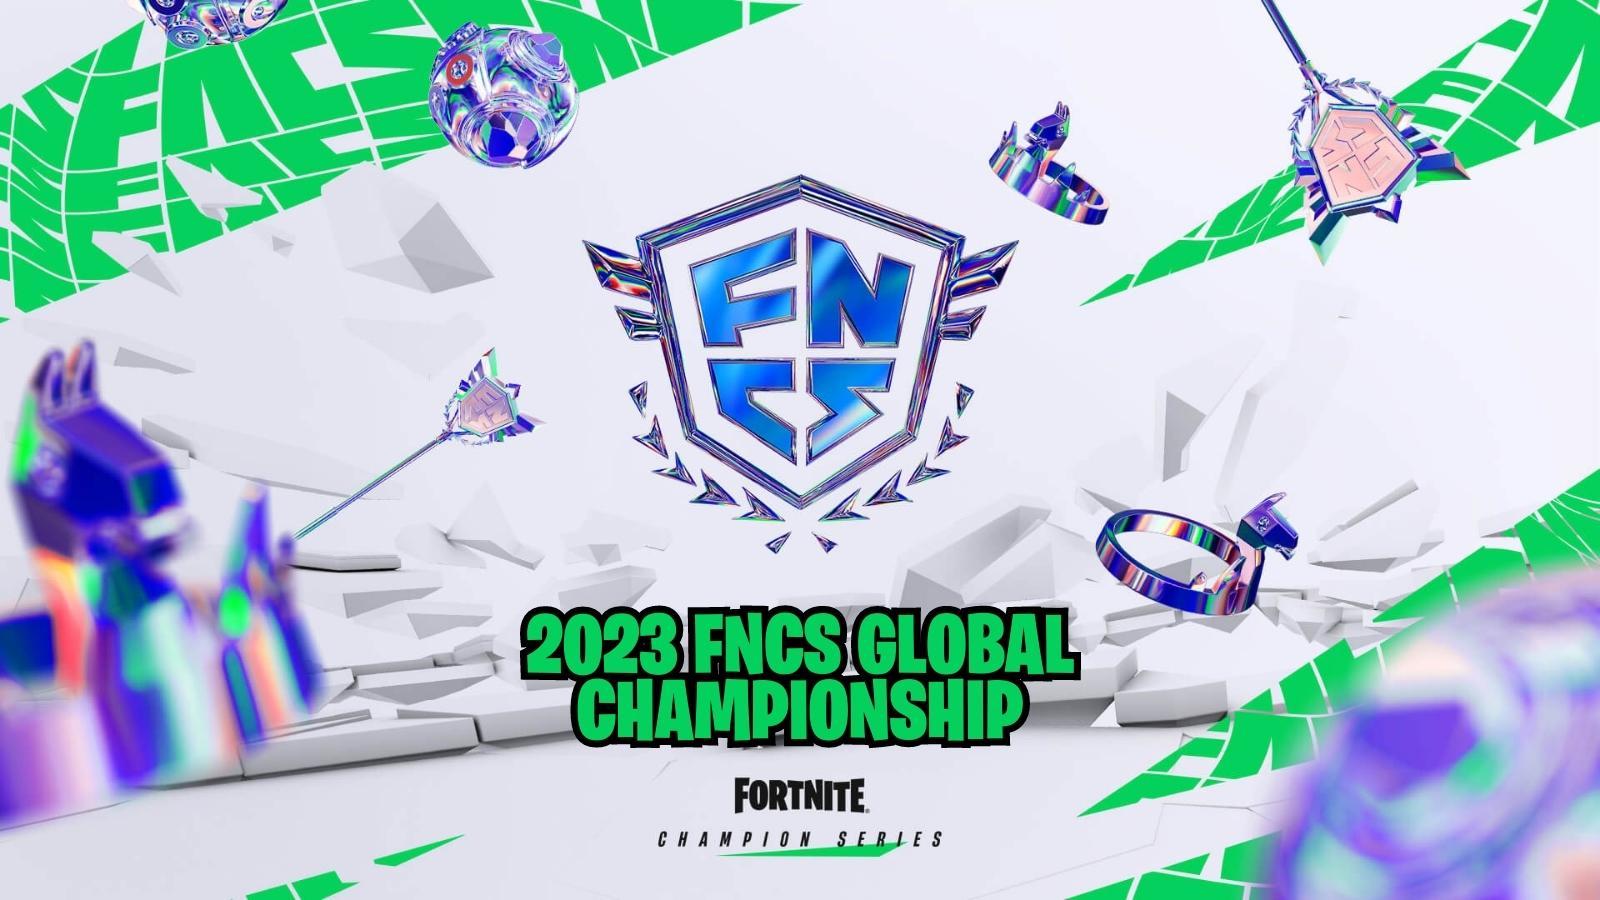 FNCS Global Championship 2023 art